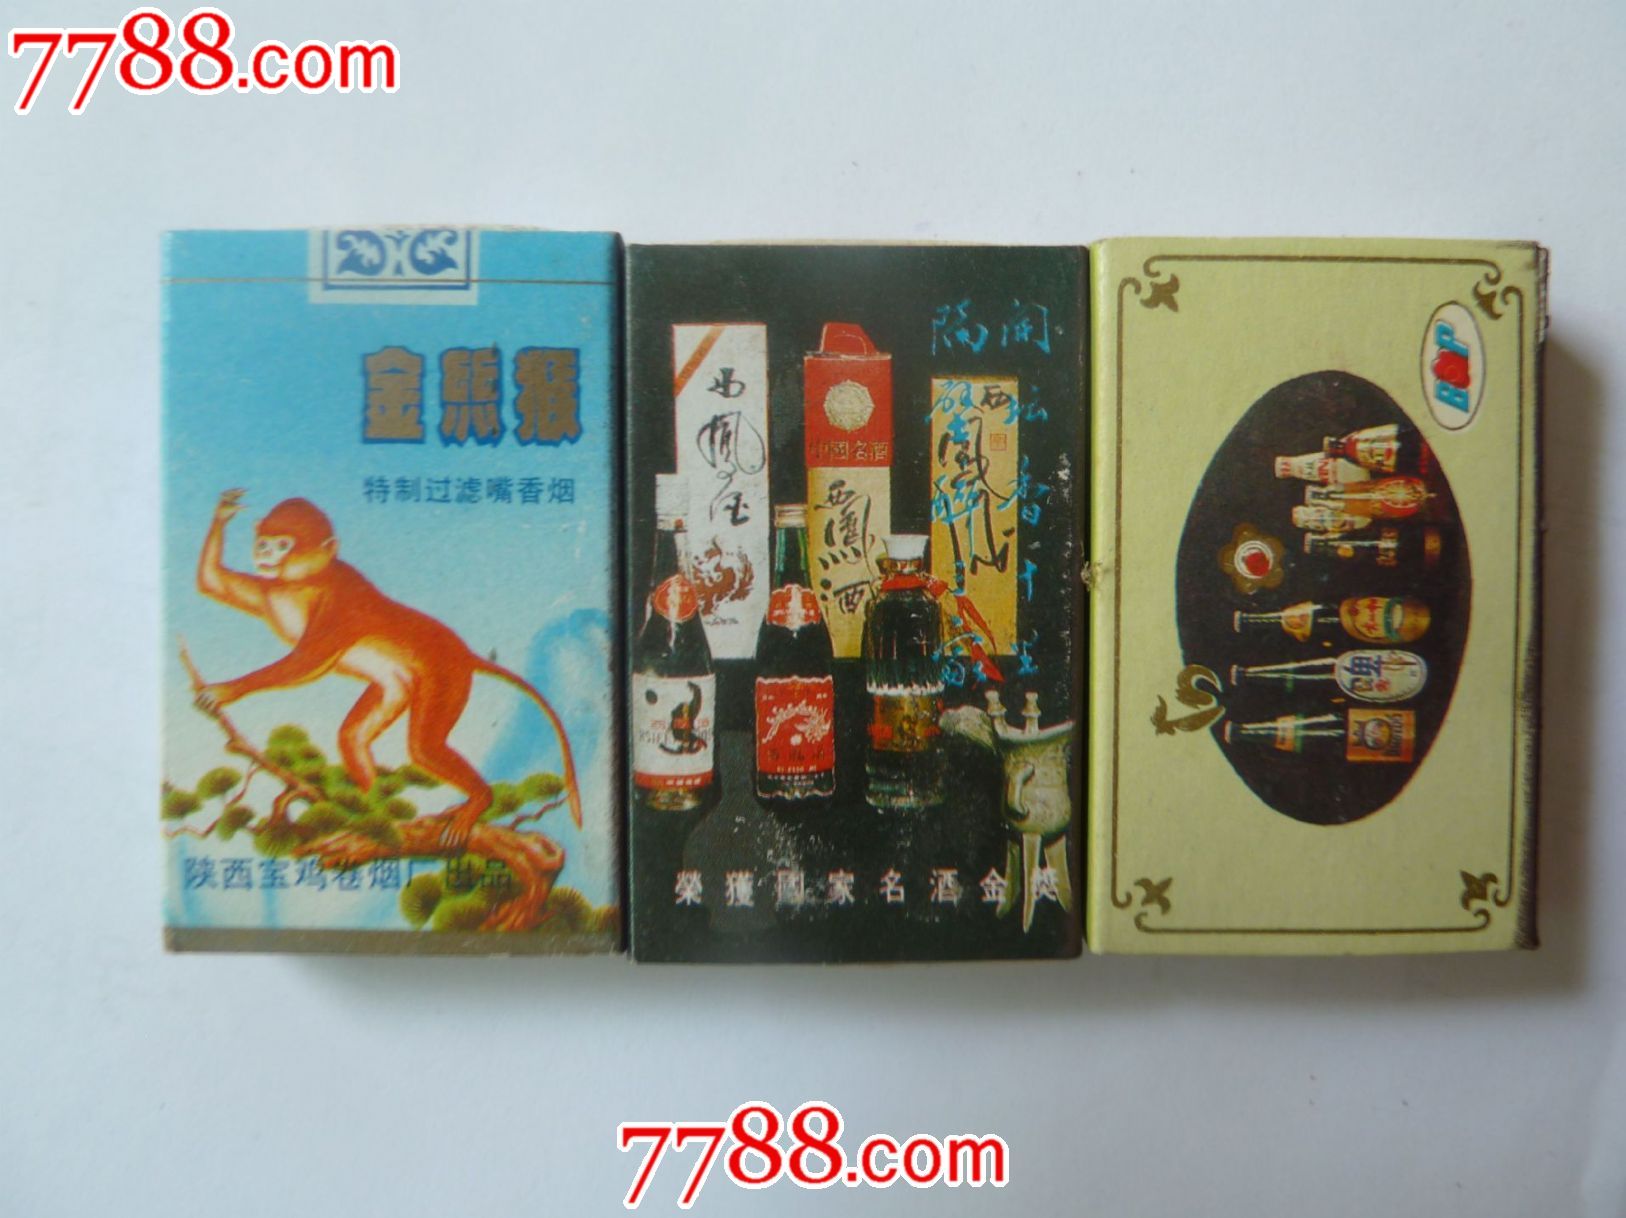 90年代初期西安火柴厂香烟,酒类广告火柴盒3件图片